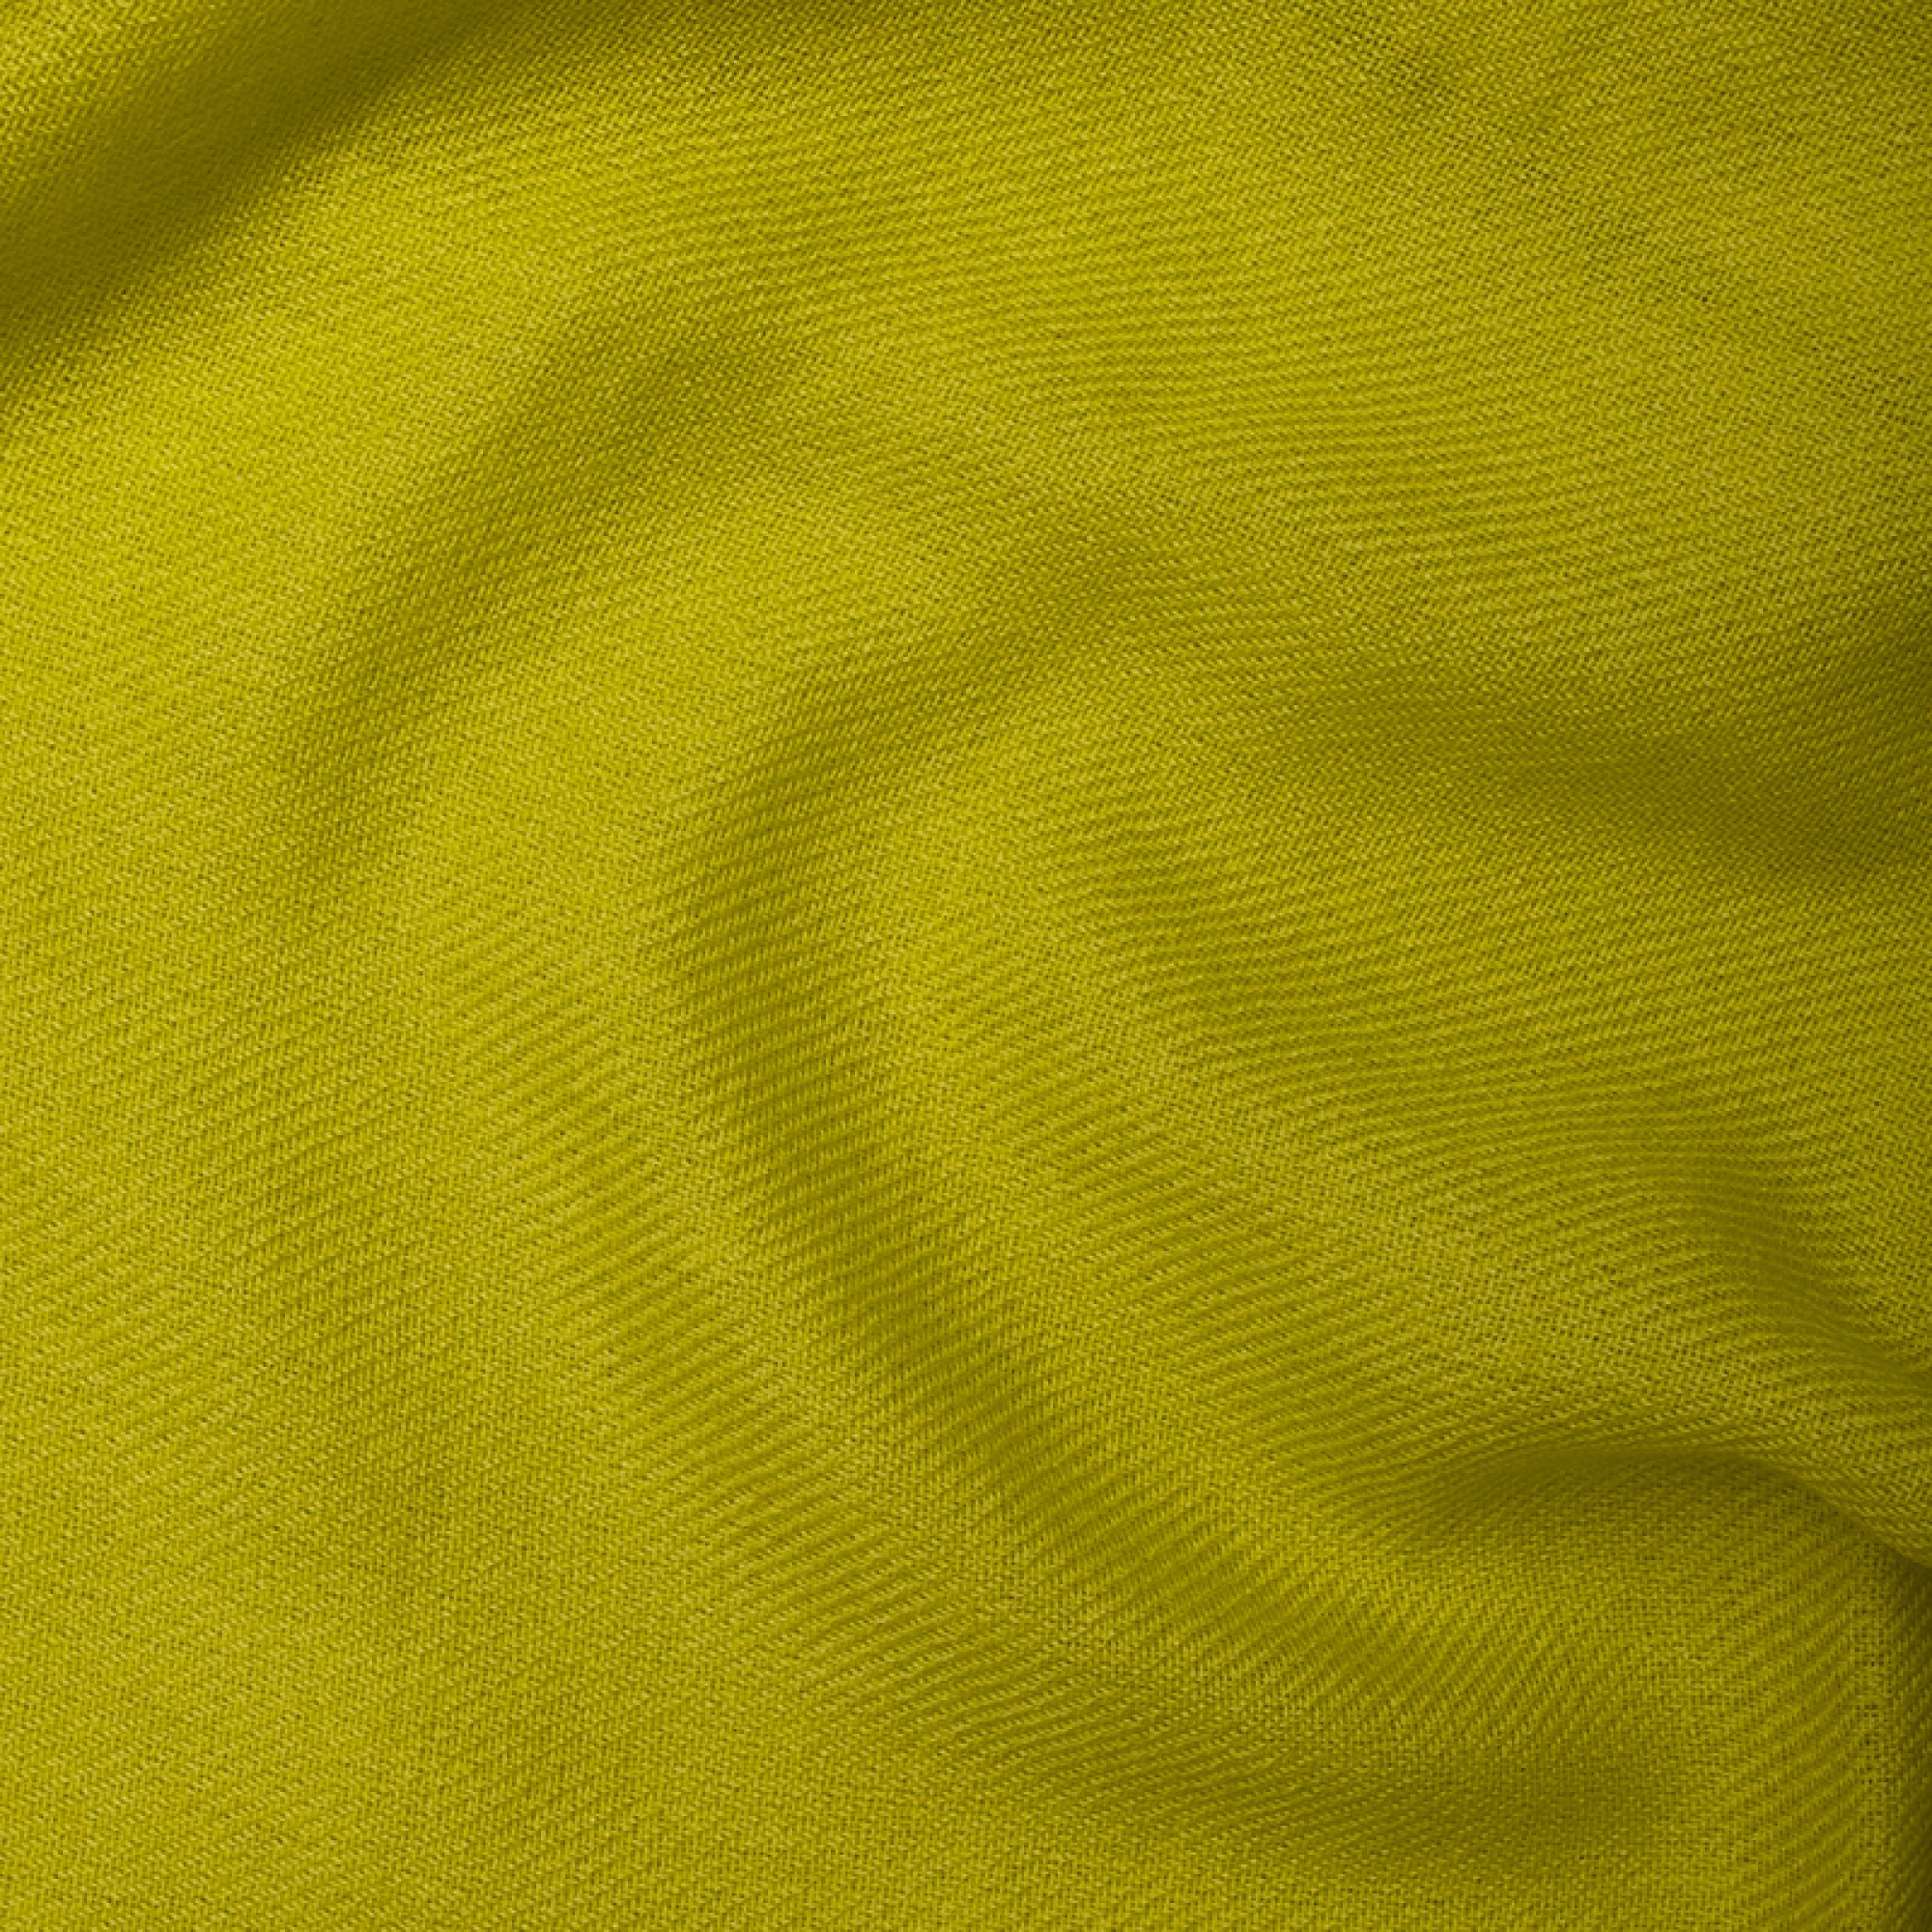 Cachemire accessoires couvertures plaids toodoo plain s 140 x 200 vert sulfureux 140 x 200 cm